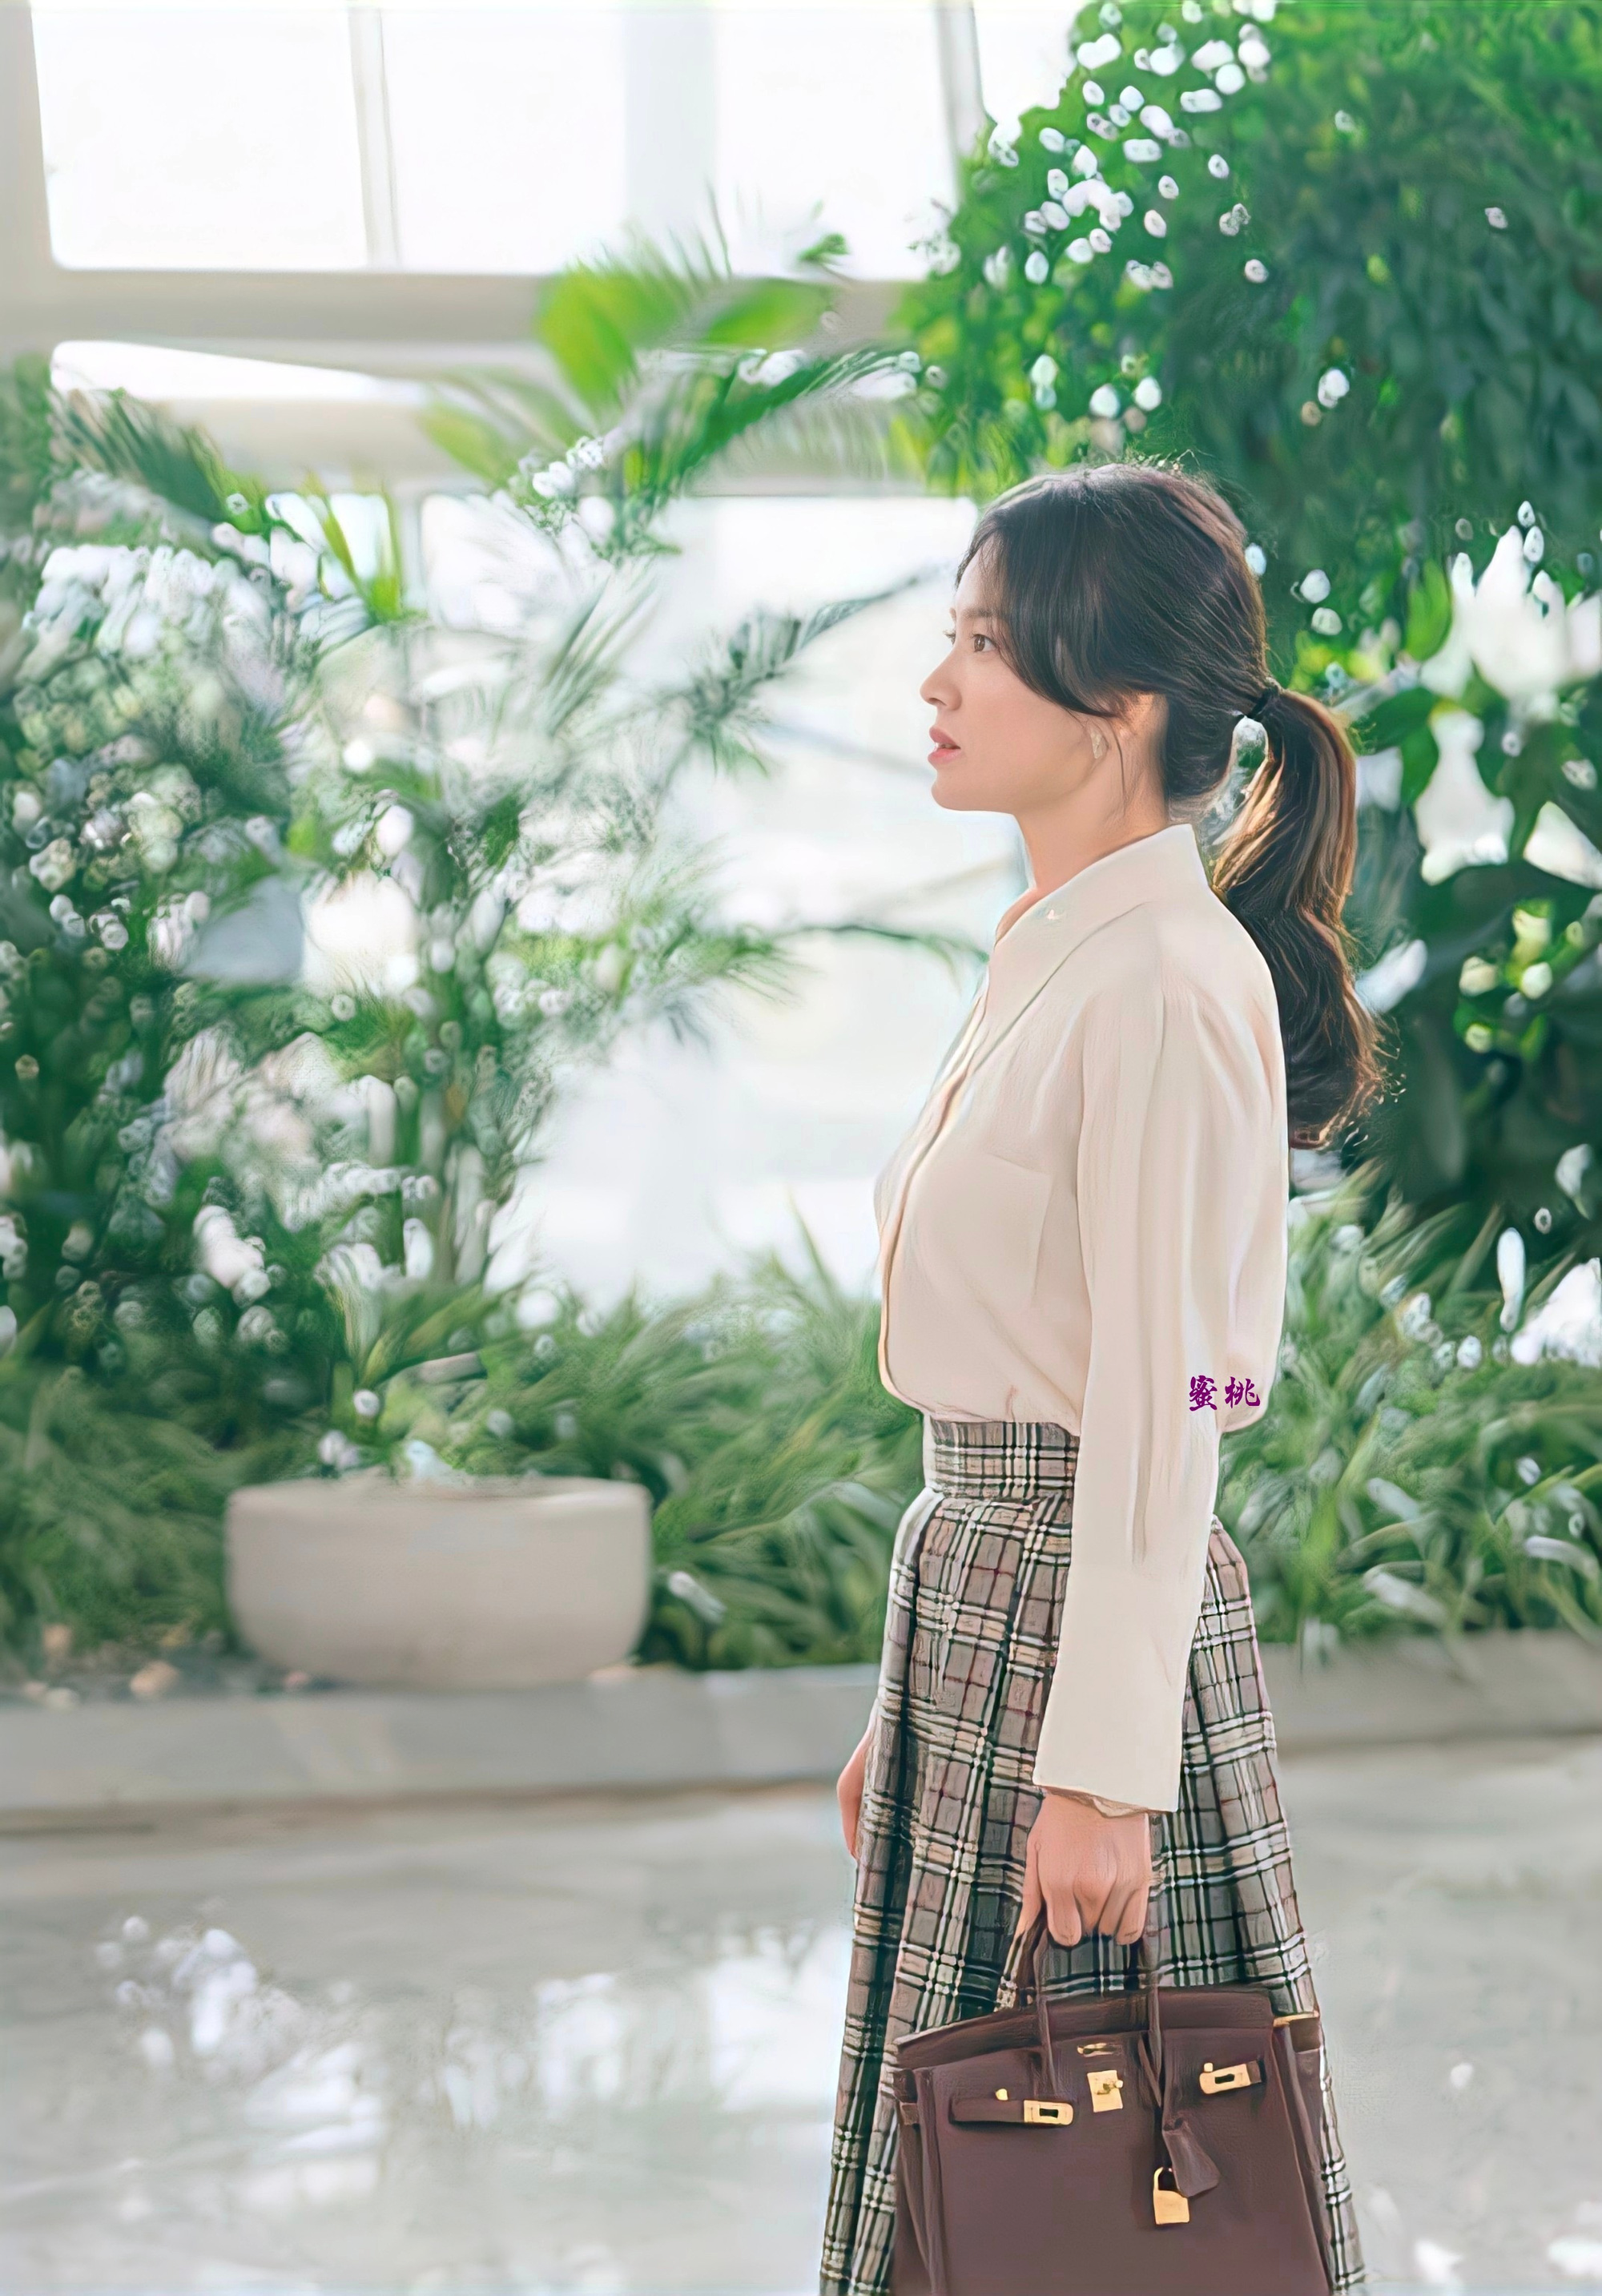 Song Hye Kyo phim mới Song Hye Kyo khiến dân tình xỉu ngang xỉu dọc vì bạo chi cho &quot;bom xịt&quot; nhưng bóc mác xong mới thấy: Thường thôi! - Ảnh 4.